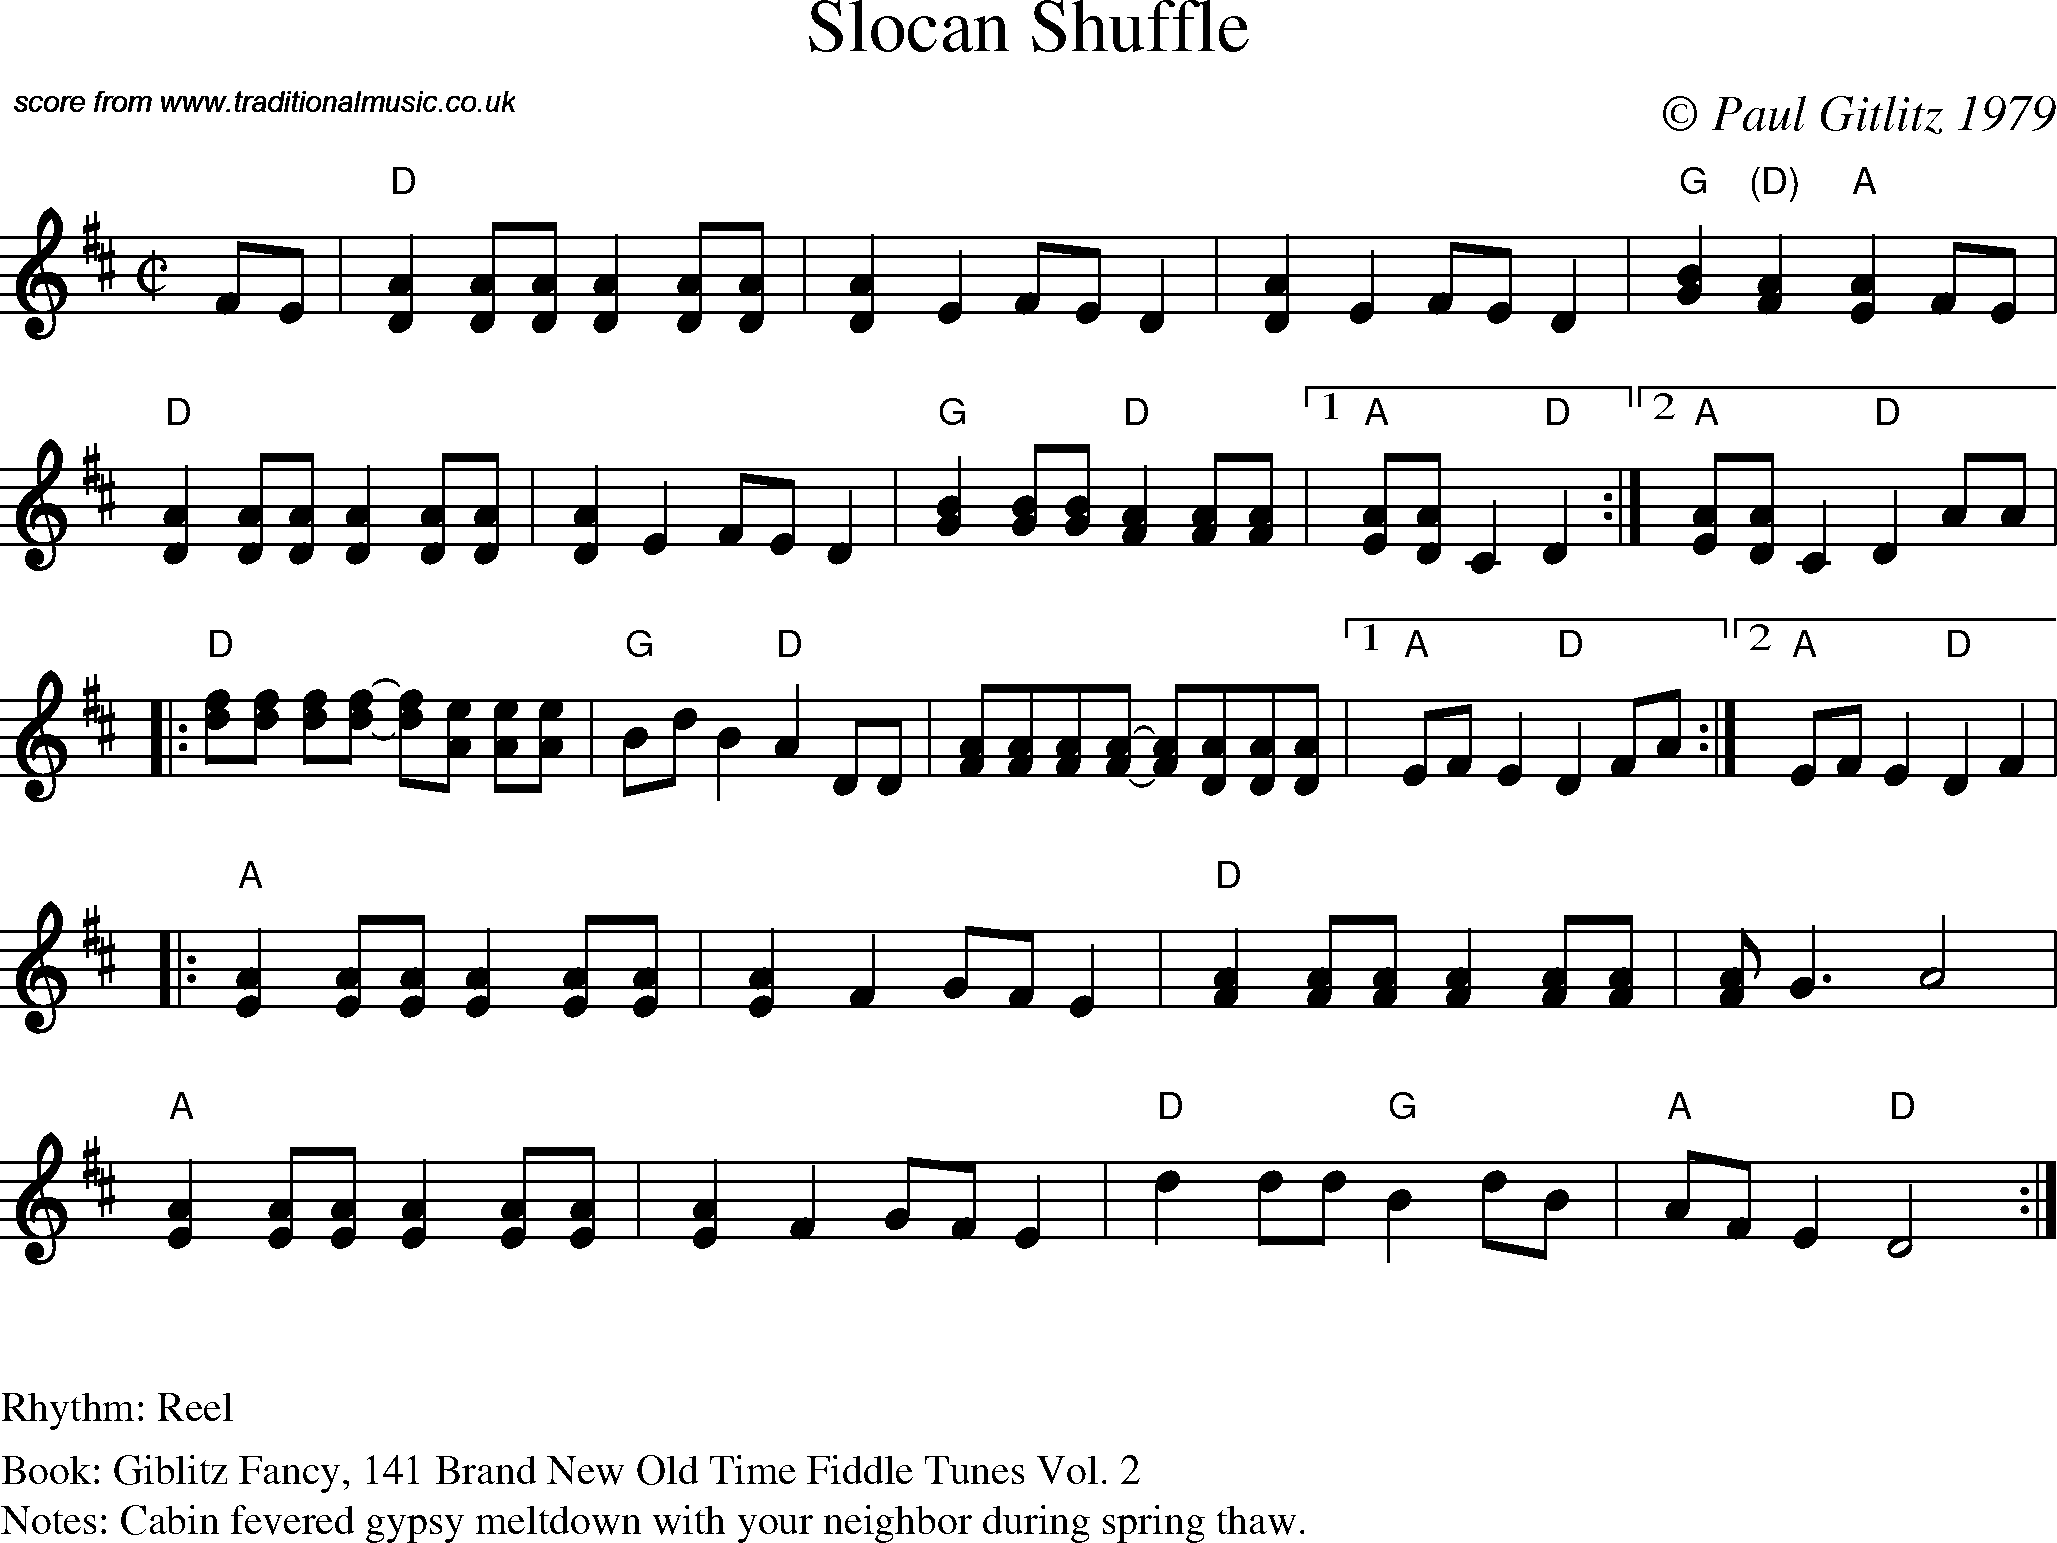 Sheet Music Score for Reel - Slocan Shuffle